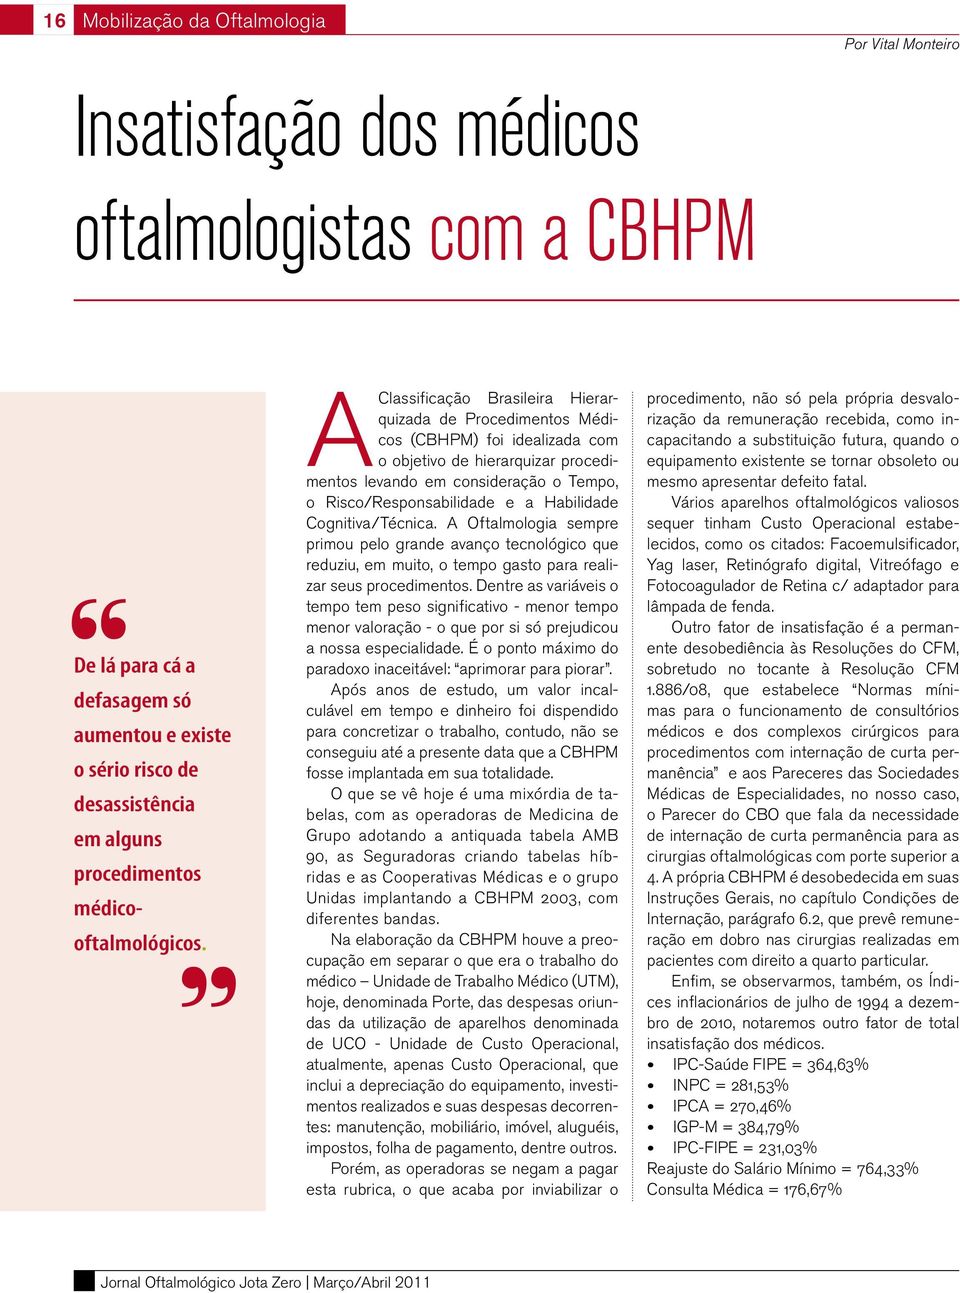 A Classificação Brasileira Hierarquizada de Procedimentos Médicos (CBHPM) foi idealizada com o objetivo de hierarquizar procedimentos levando em consideração o Tempo, o Risco/Responsabilidade e a